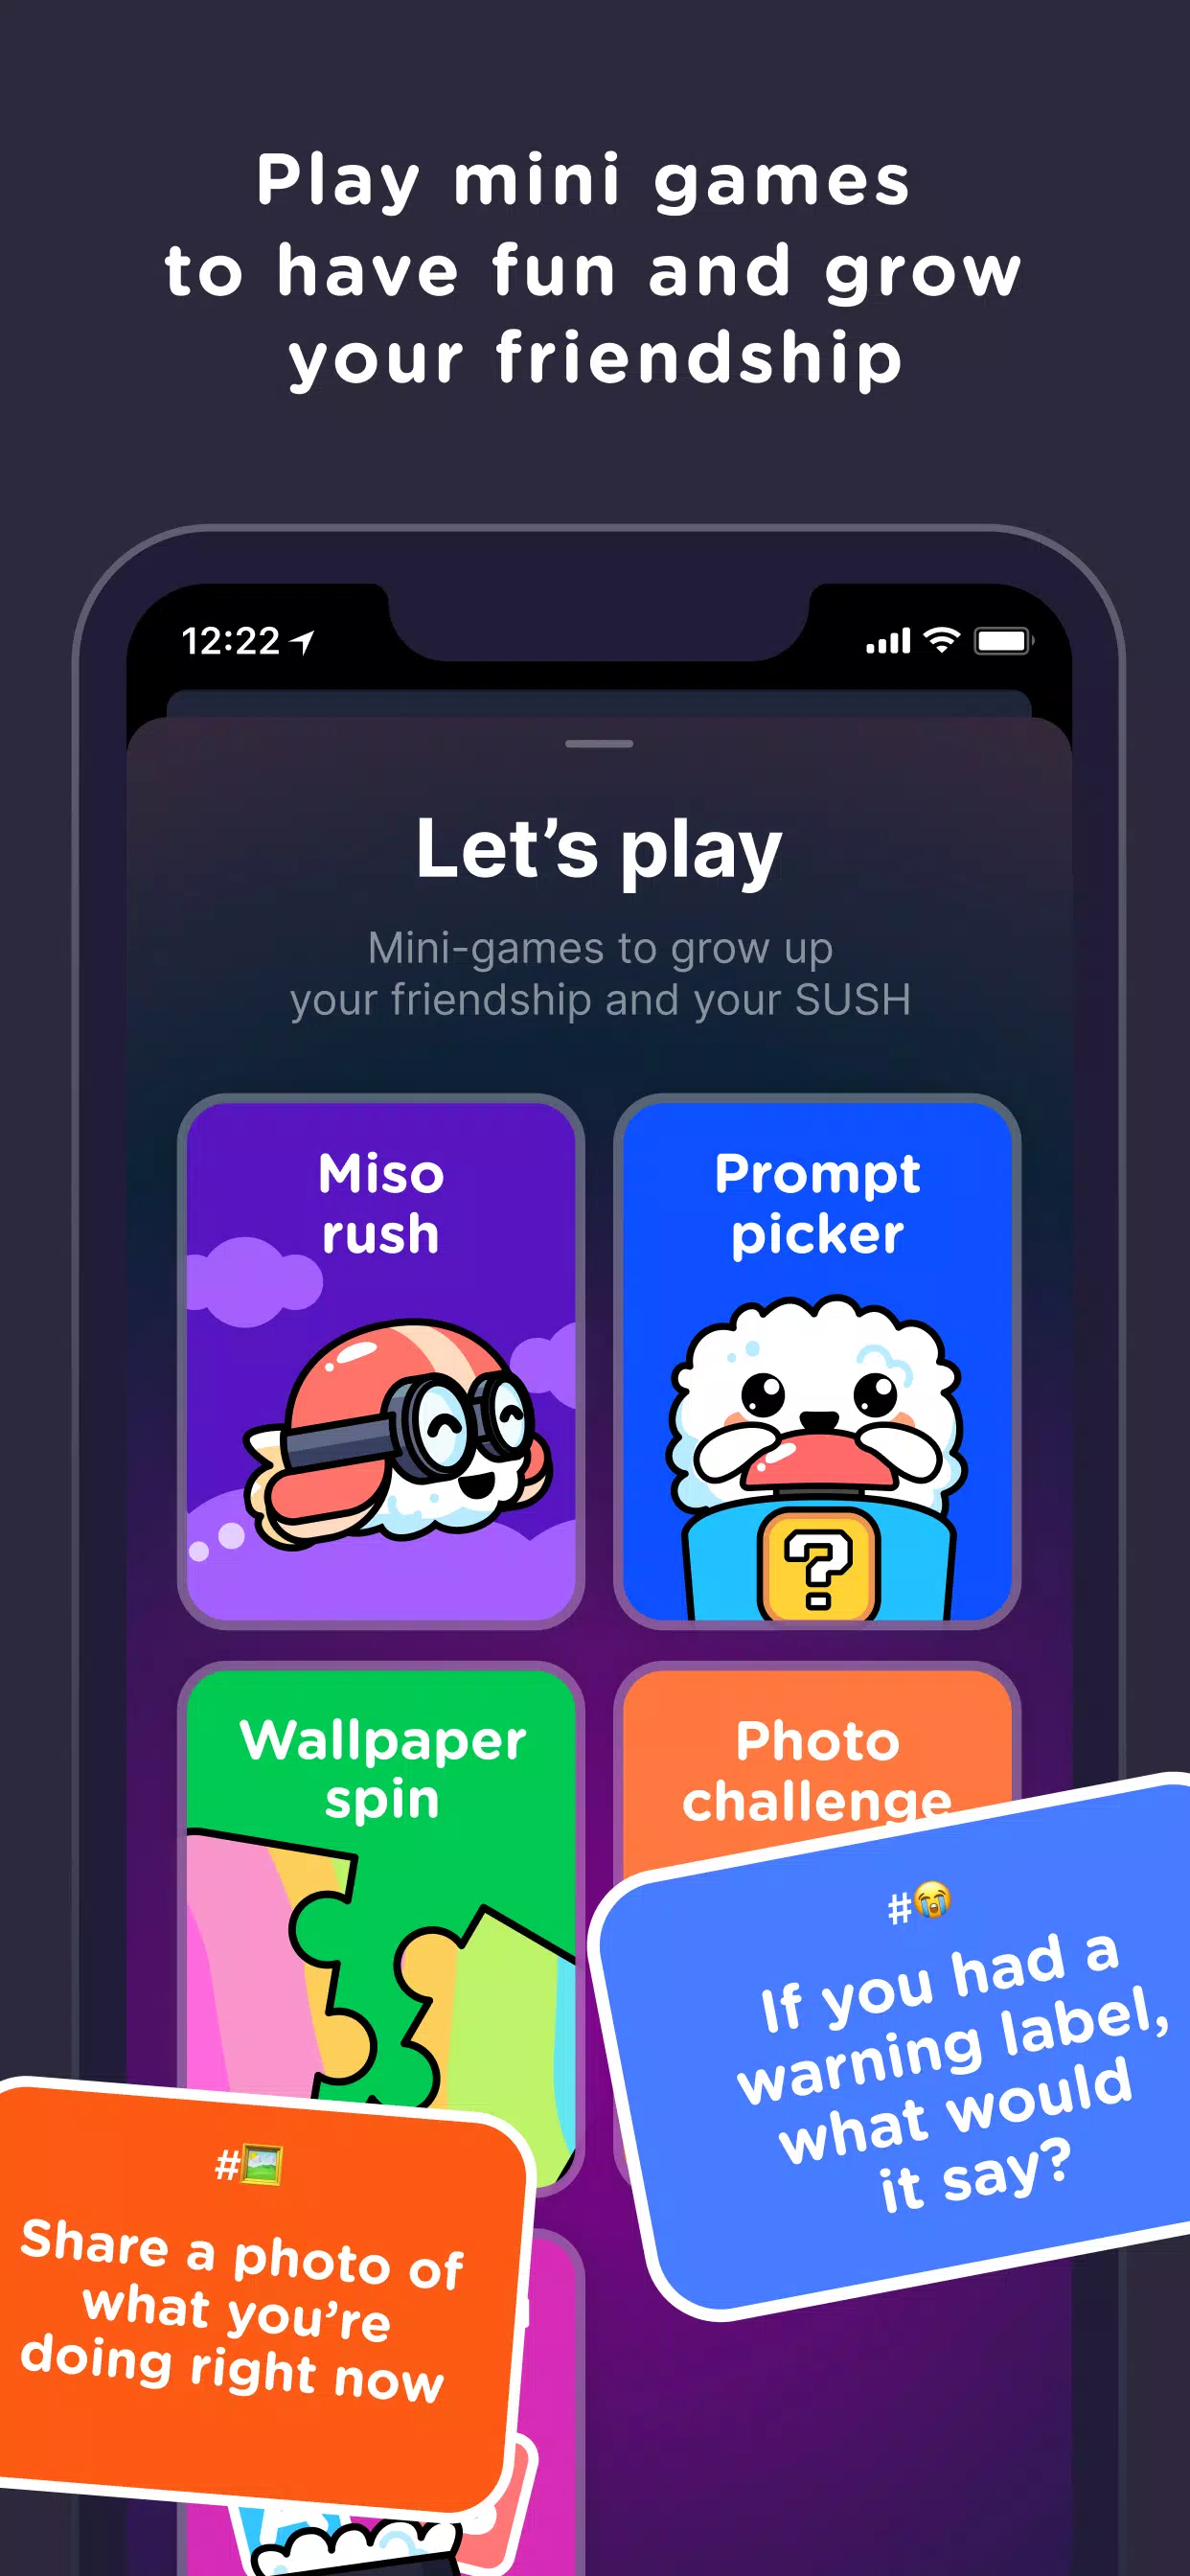 nome do app:sush #sush #fyp #jogos